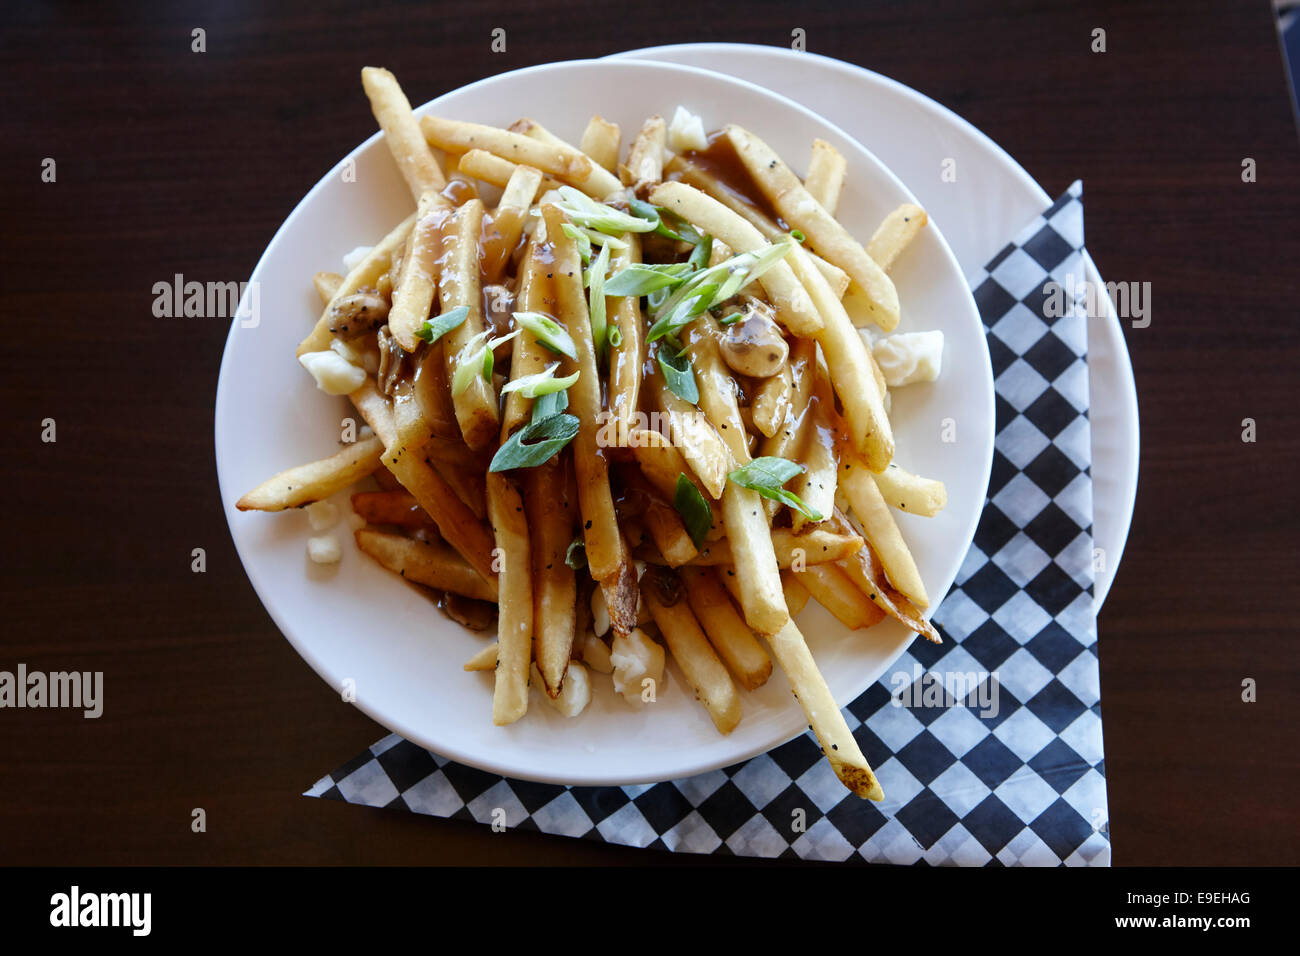 Placa de la poutine papas fritas cubiertas de salsa y queso cuajada Saskatchewan Canadá Foto de stock